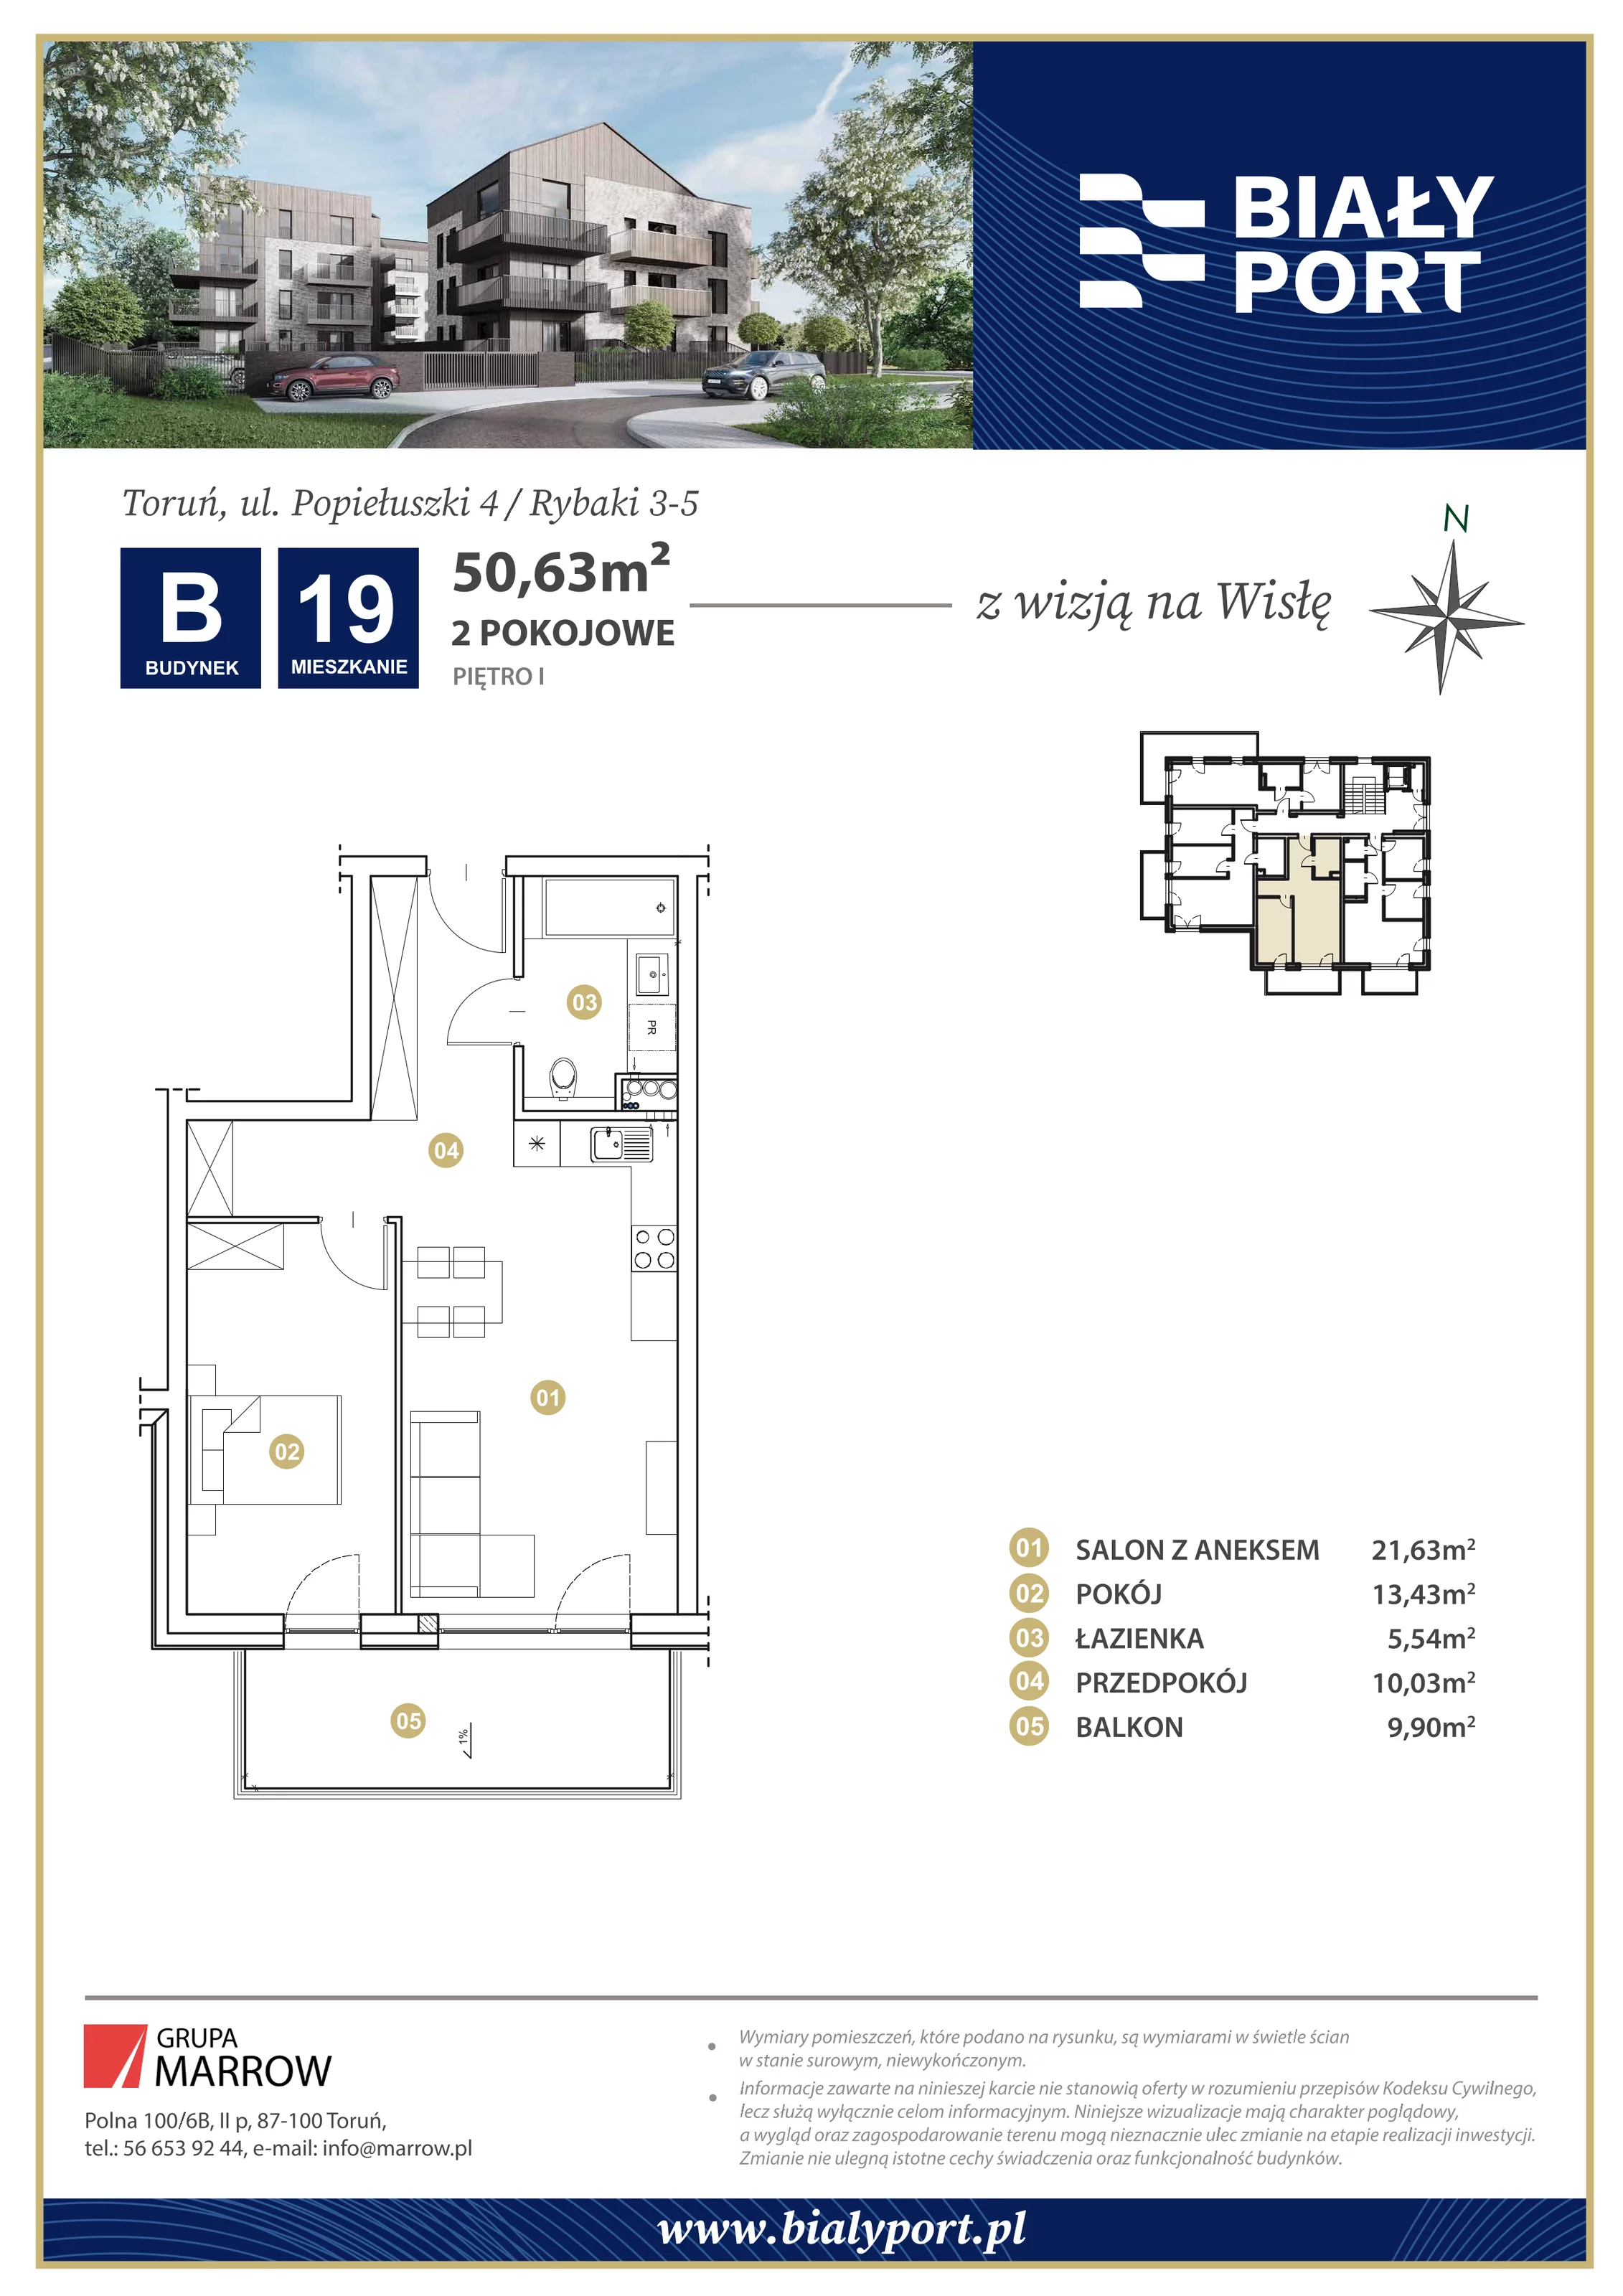 Mieszkanie 50,63 m², piętro 1, oferta nr 19, Biały Port, Toruń, Rybaki, ul. Popiełuszki 4